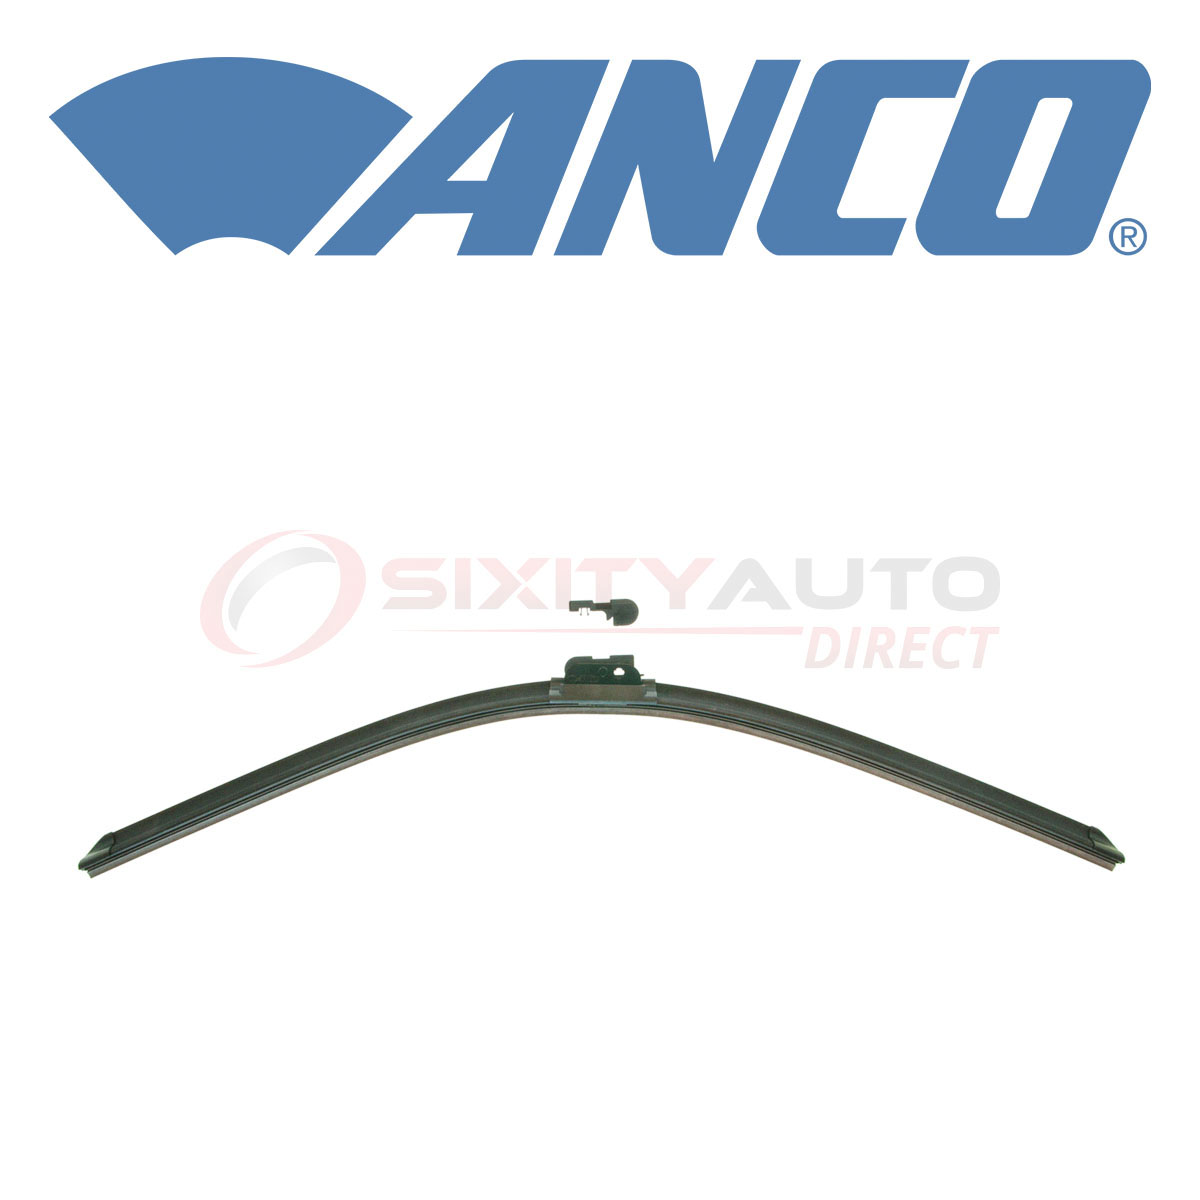 ANCO Countour Windshield Wiper Blade for 2014-2016 Kia Forte Koup 1.6L 2.0L hb | eBay 2014 Kia Forte Koup Wiper Blade Size